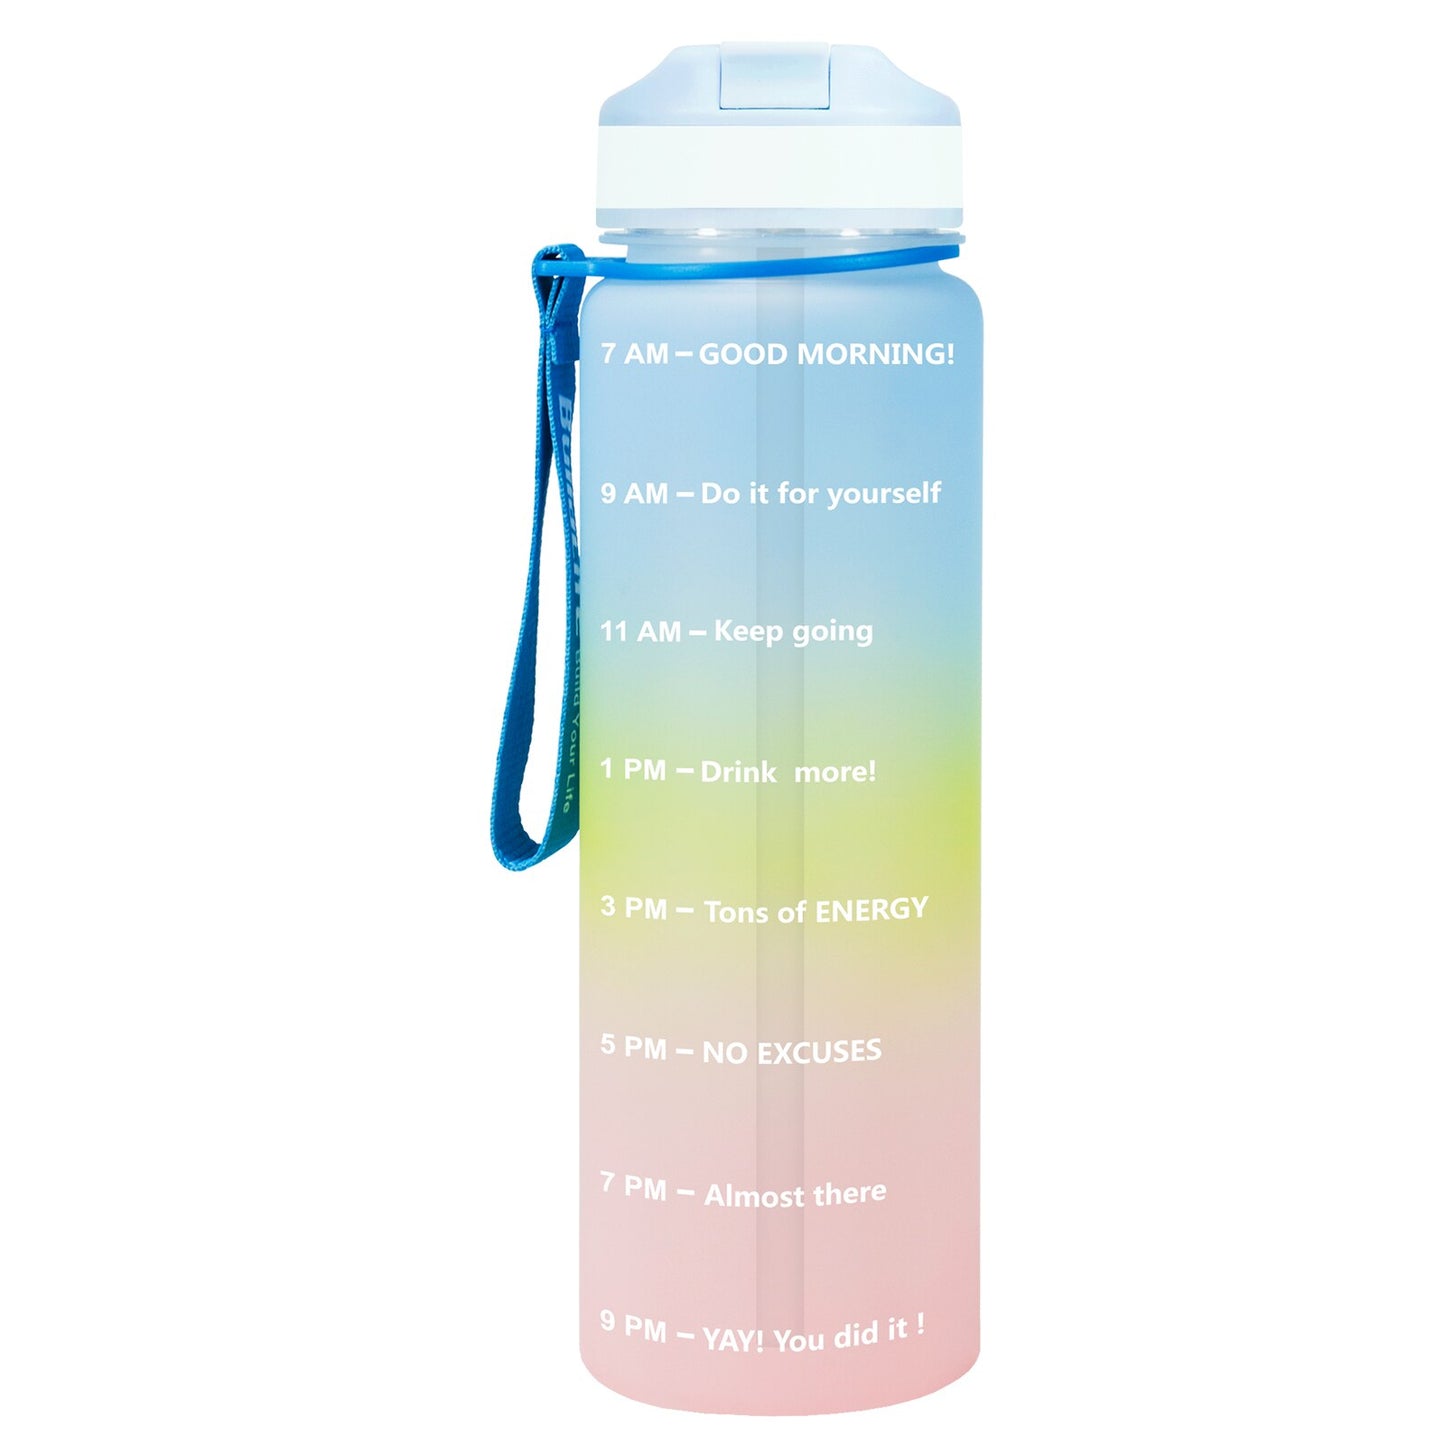 Eine blau-gelb-pinke Sporttrinkflasche mit einer Zeitmarkierungen sowie motivierenden Spruechen für verschiedene Tageszeiten. Die Flasche hat eine blaue Trageschlaufe und einen Deckel mit einem aufklappbaren Trinkverschluss.